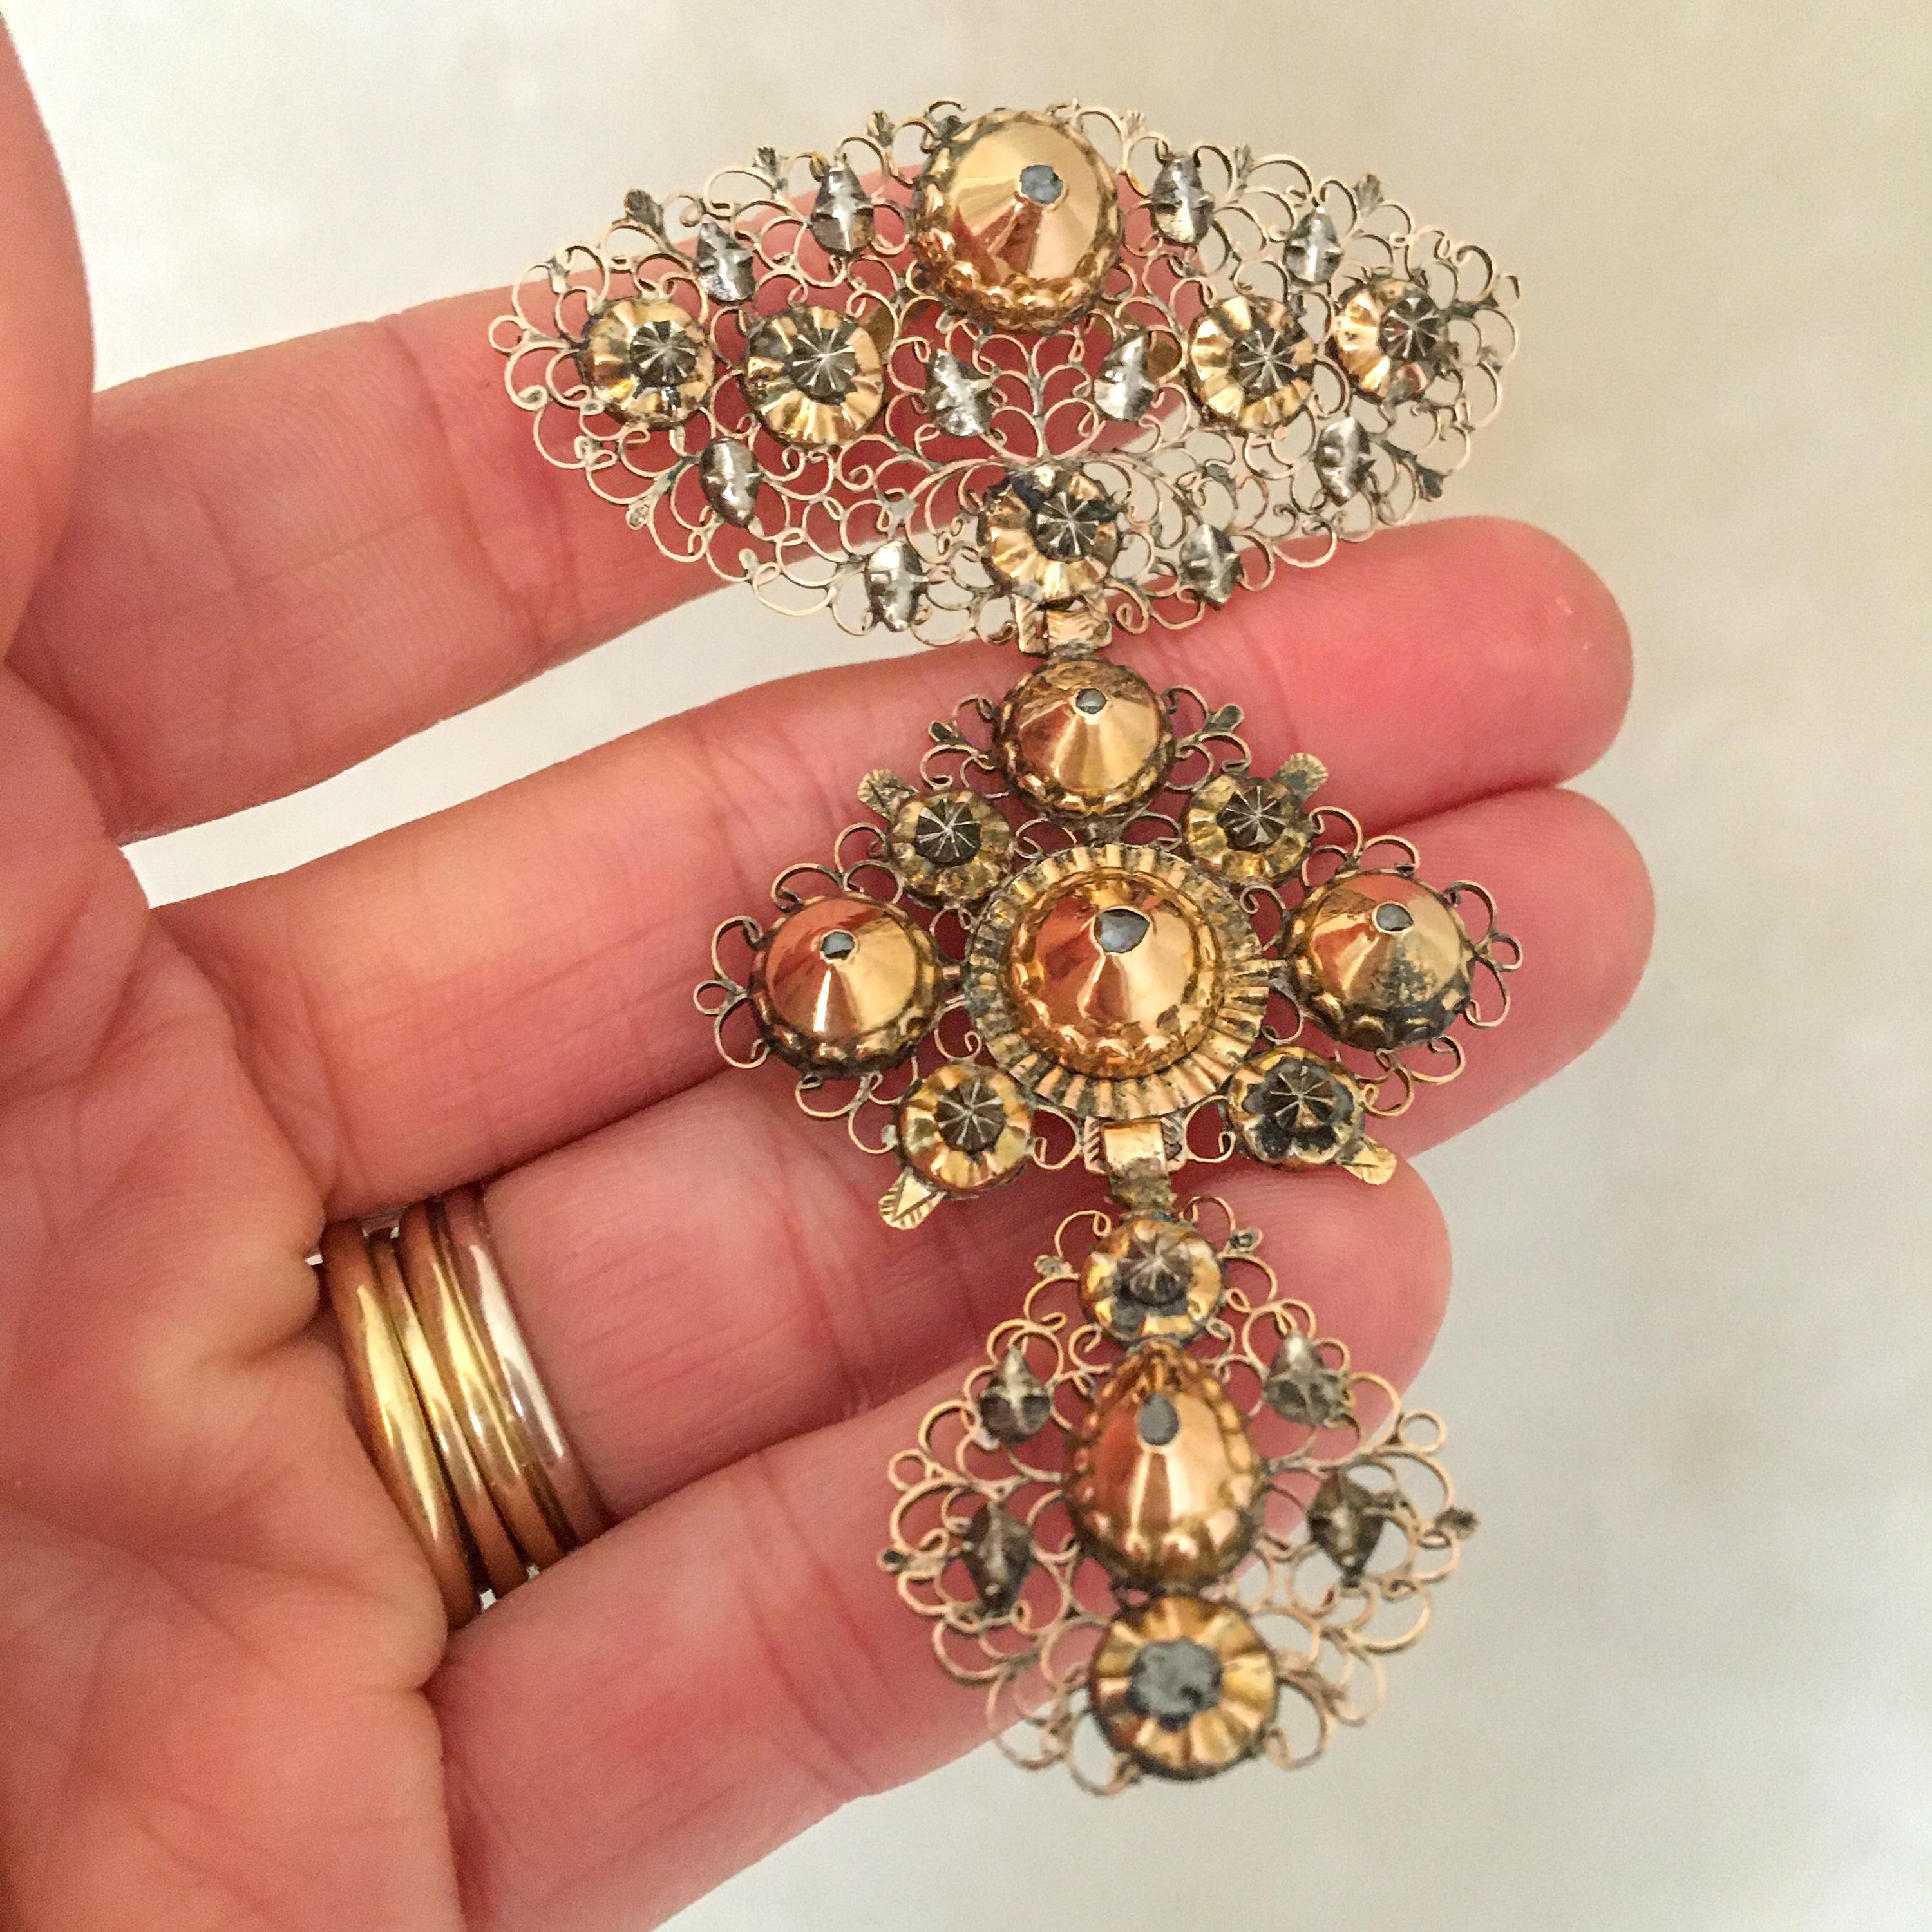 Il s'agit d'un triple pendentif antique du XVIIIe siècle, réalisé en or rose avec des touches d'argent. Pendentif composé de trois panneaux gradués de volutes ouvertes et de dômes sertis de diamants. Un bijou de succession - incrusté de six petits